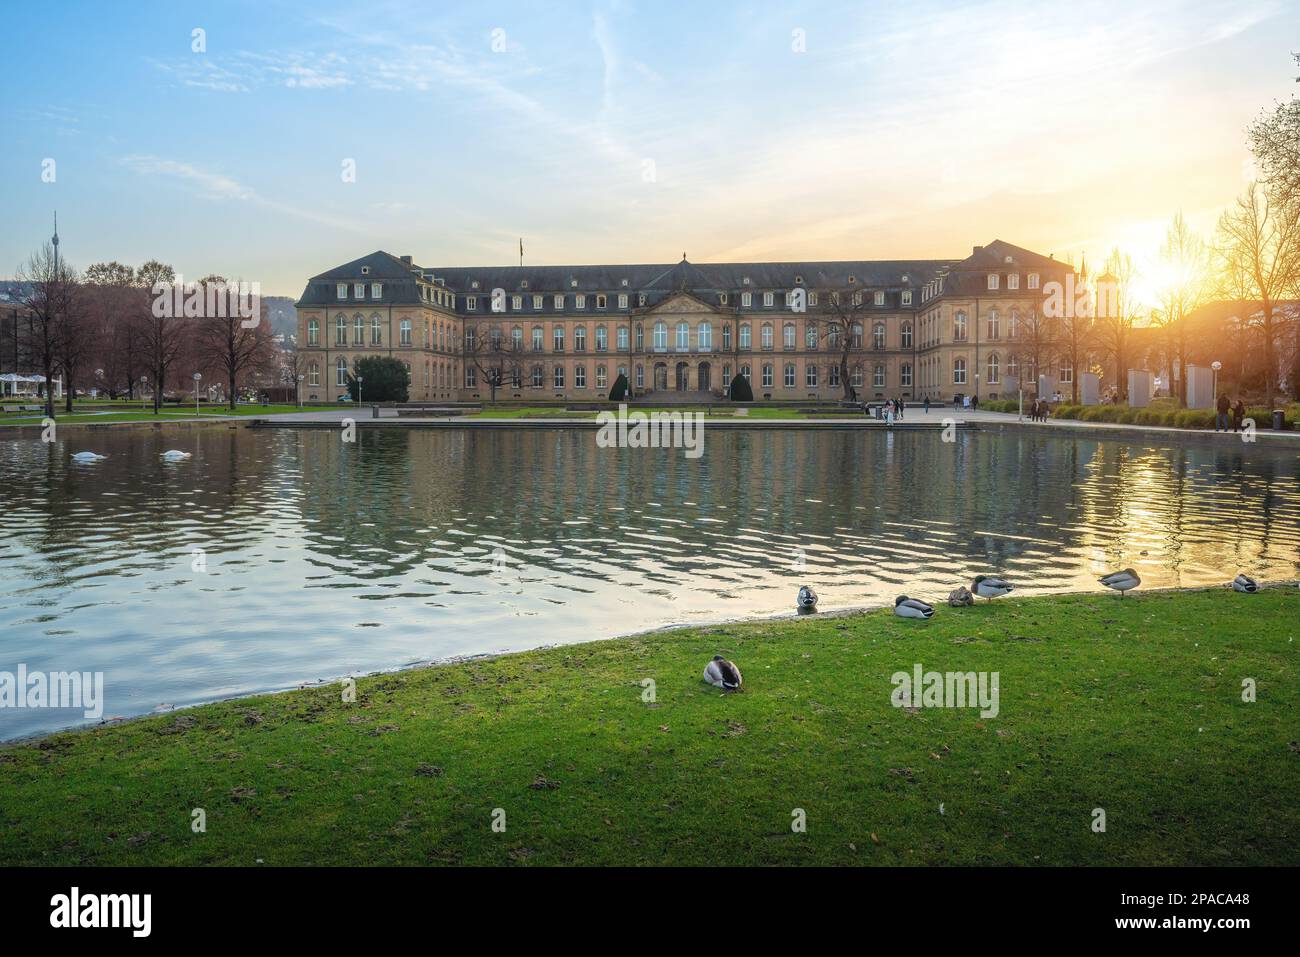 Neues Schloss (Palazzo nuovo) e il lago Eckensee al tramonto - Stoccarda, Germania Foto Stock